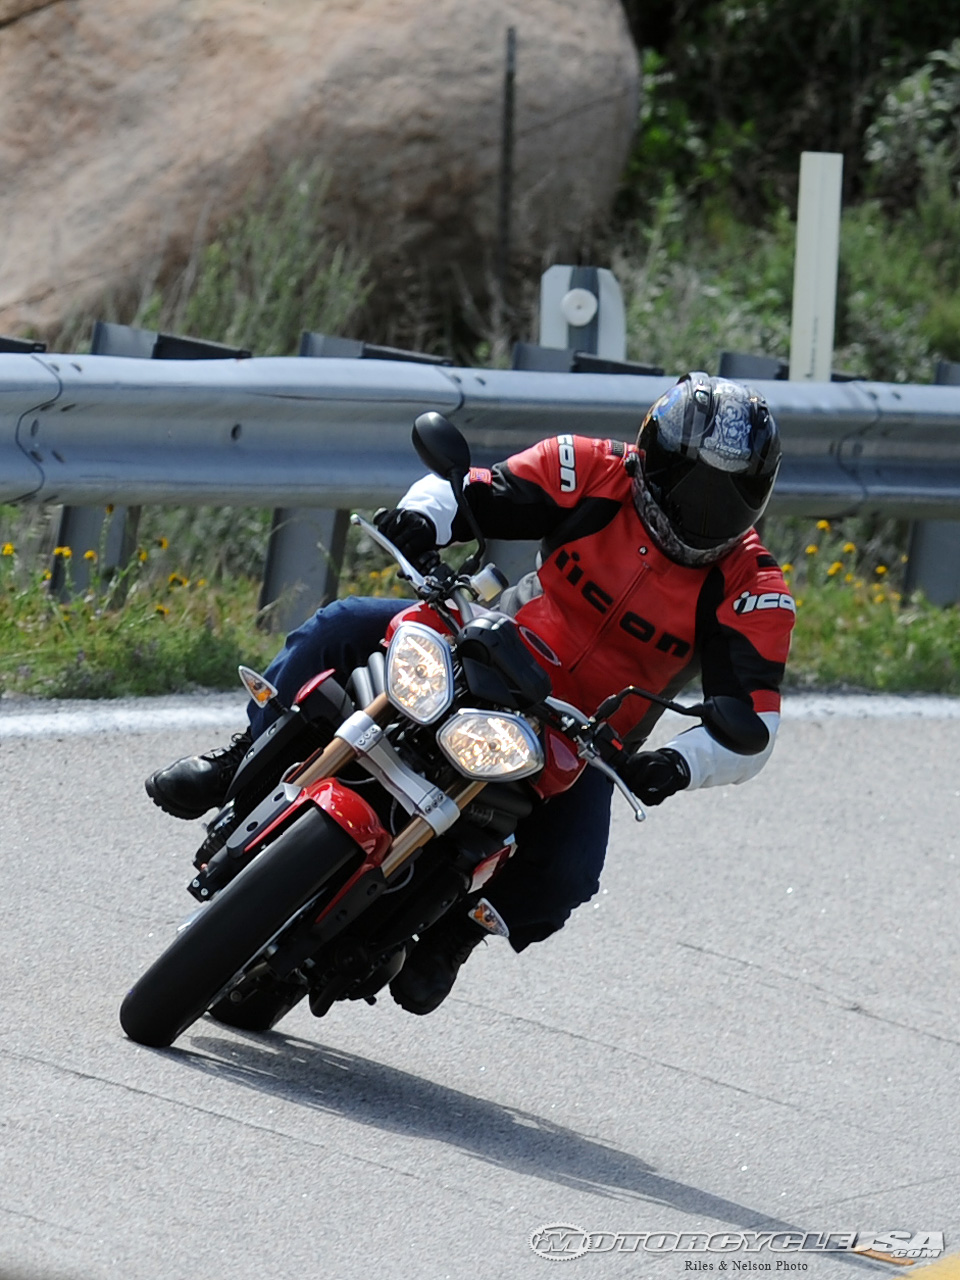 款凯旋Speed Triple摩托车图片1